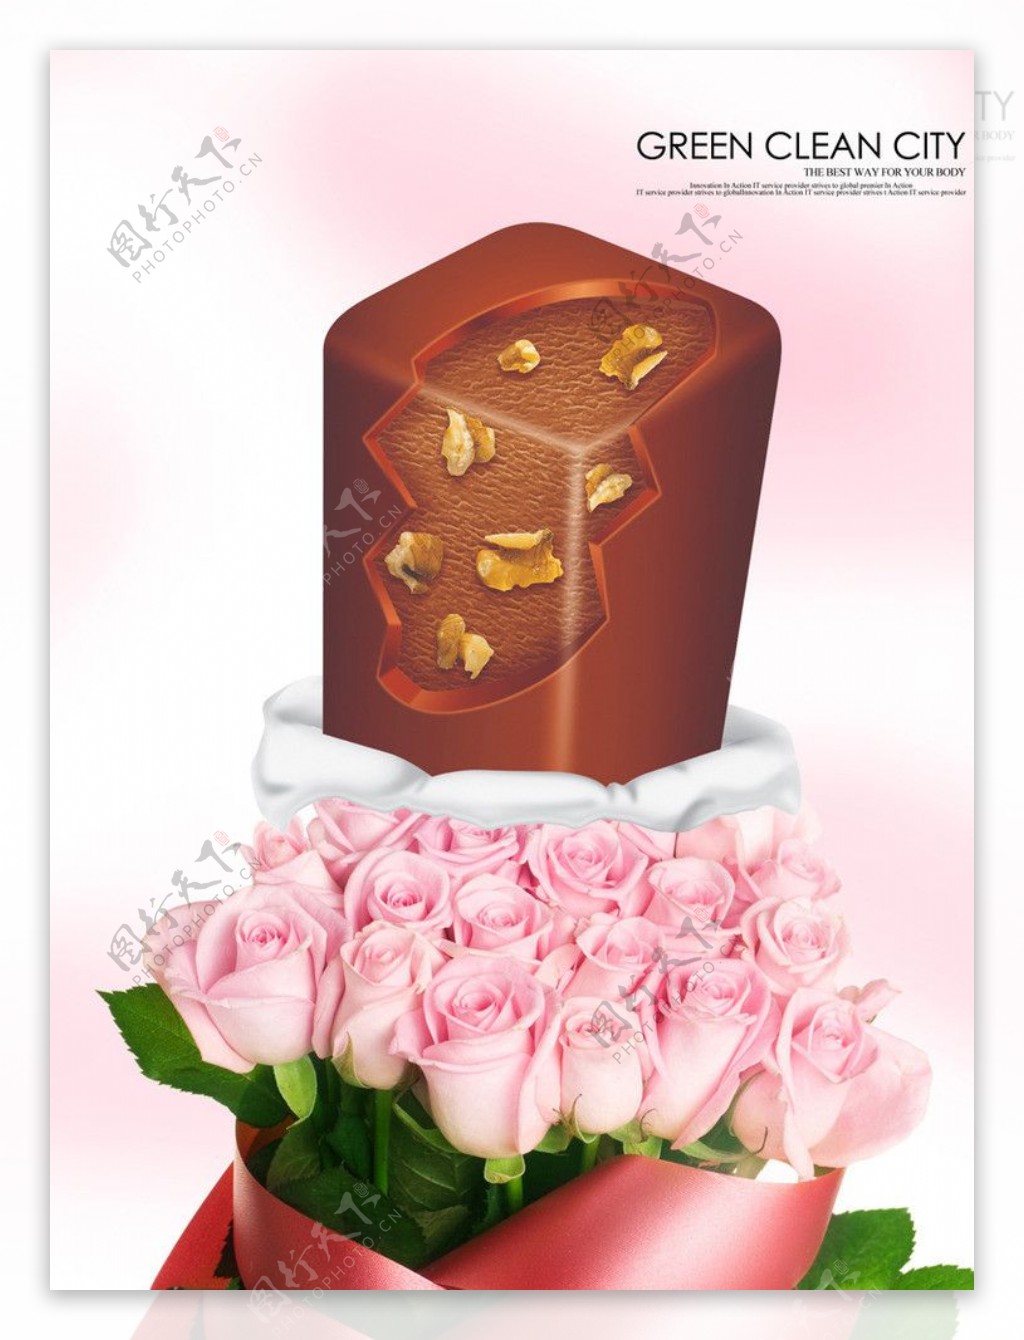 巧克力广告图片